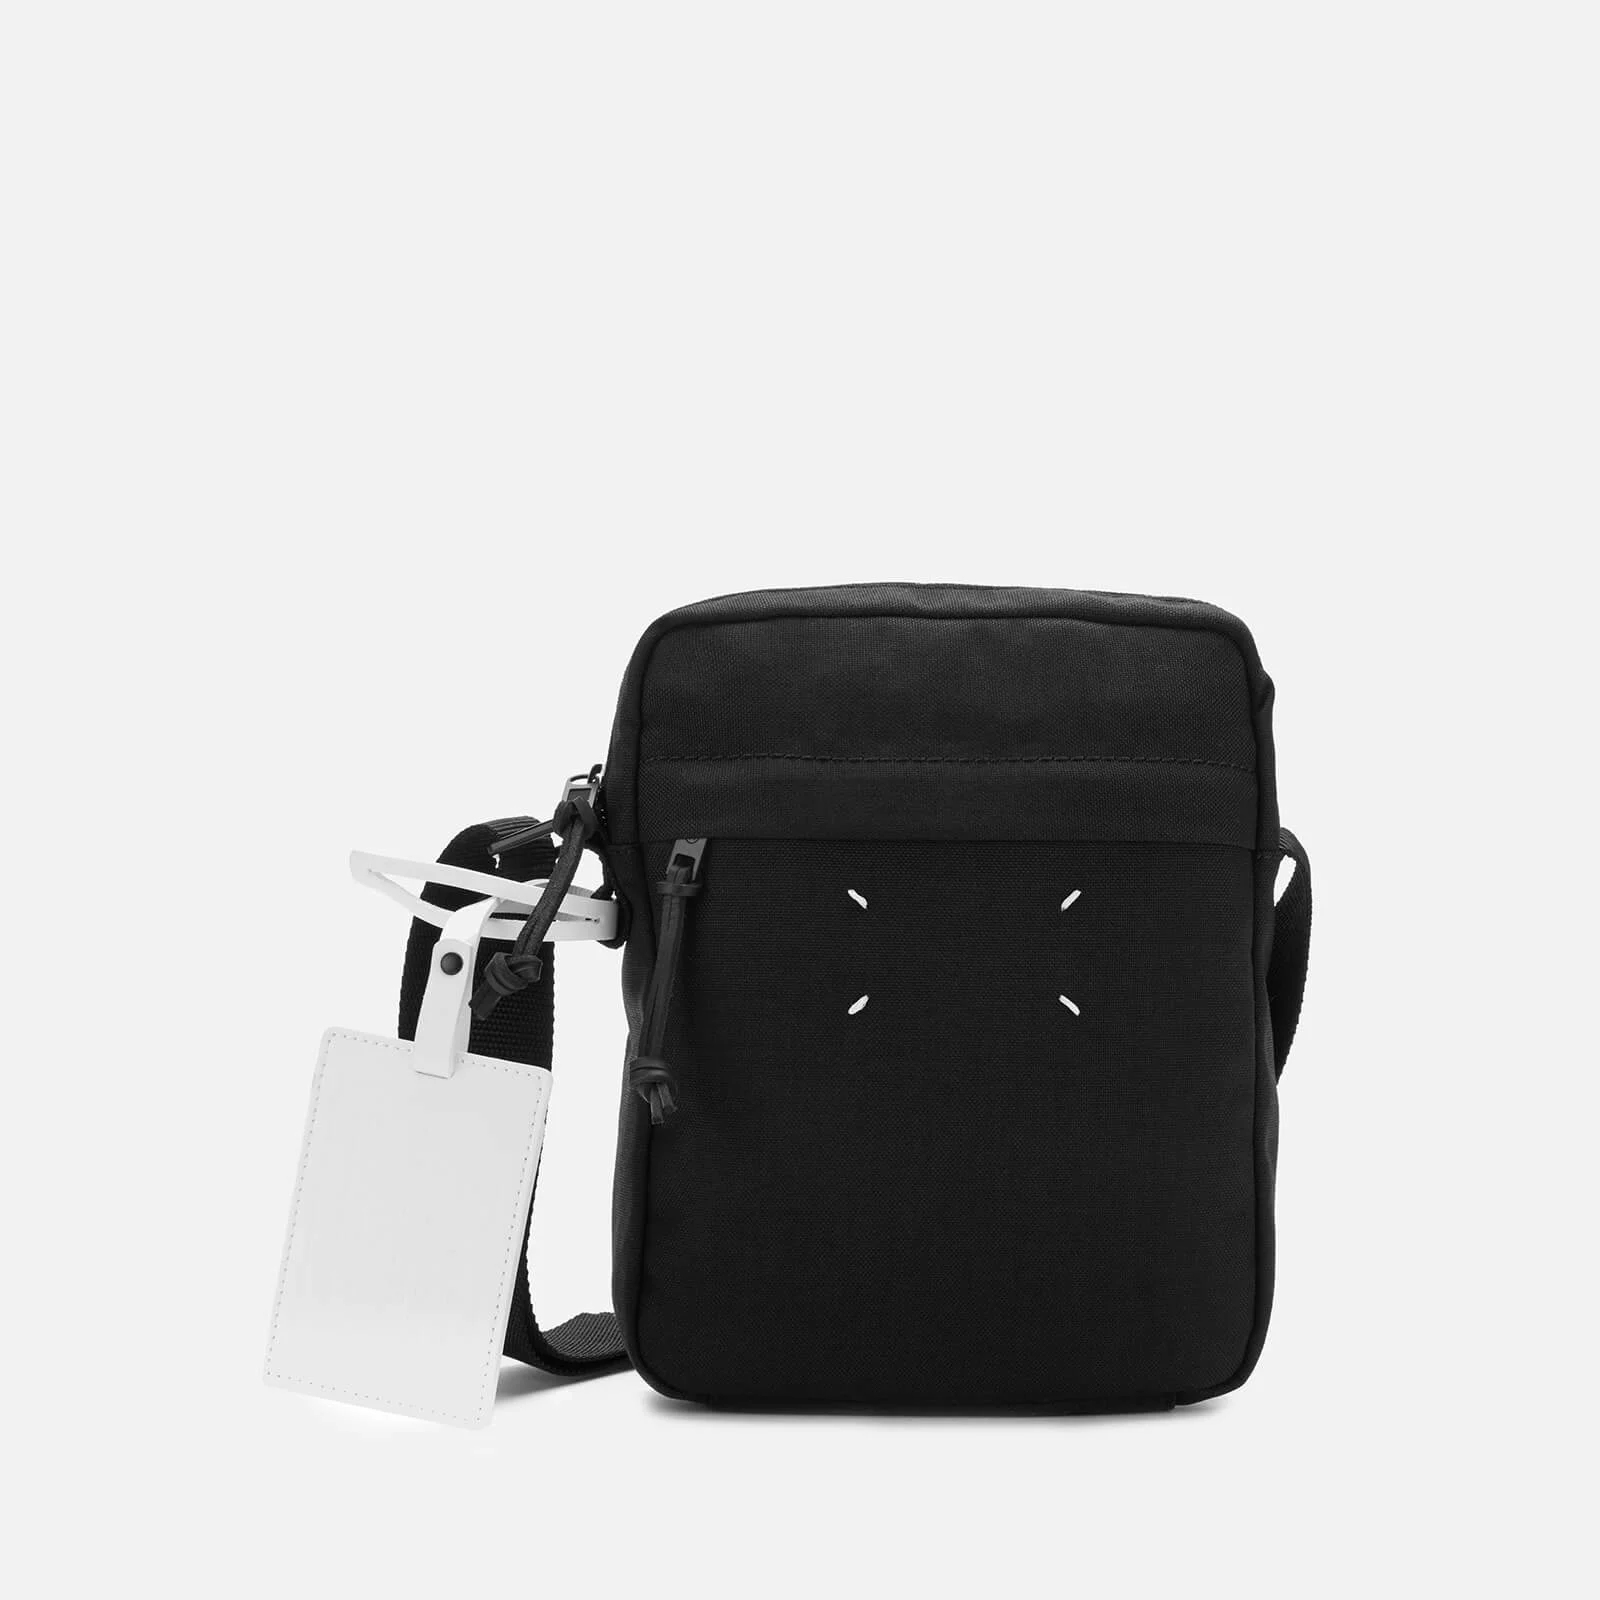 Maison Margiela Men's Medium Cross Body Bag - Black Image 1